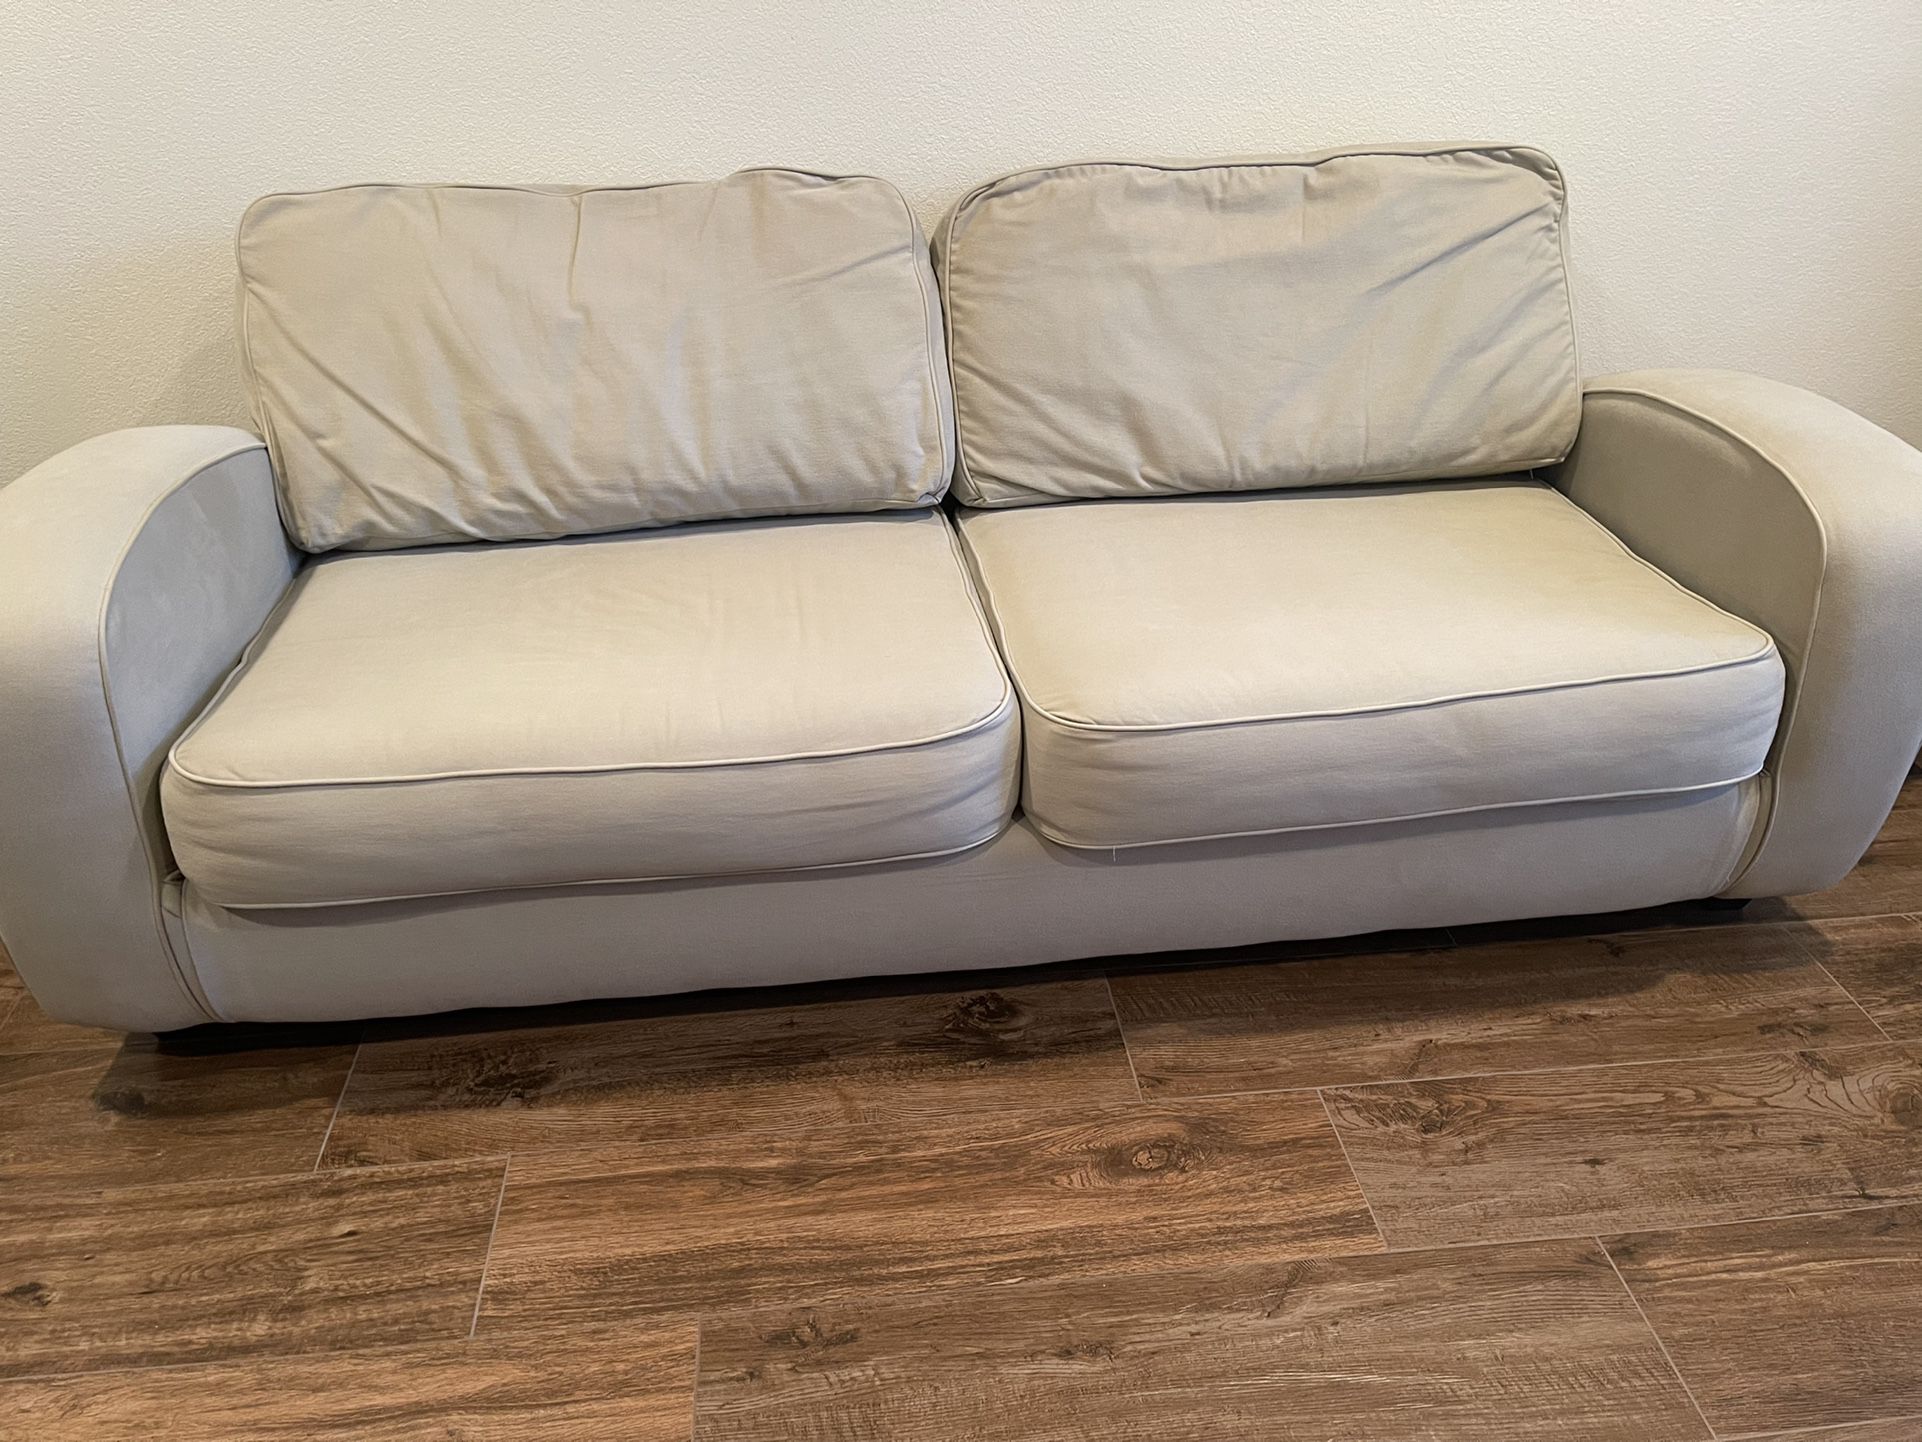 Furniture Sofa Chair Ottoman 